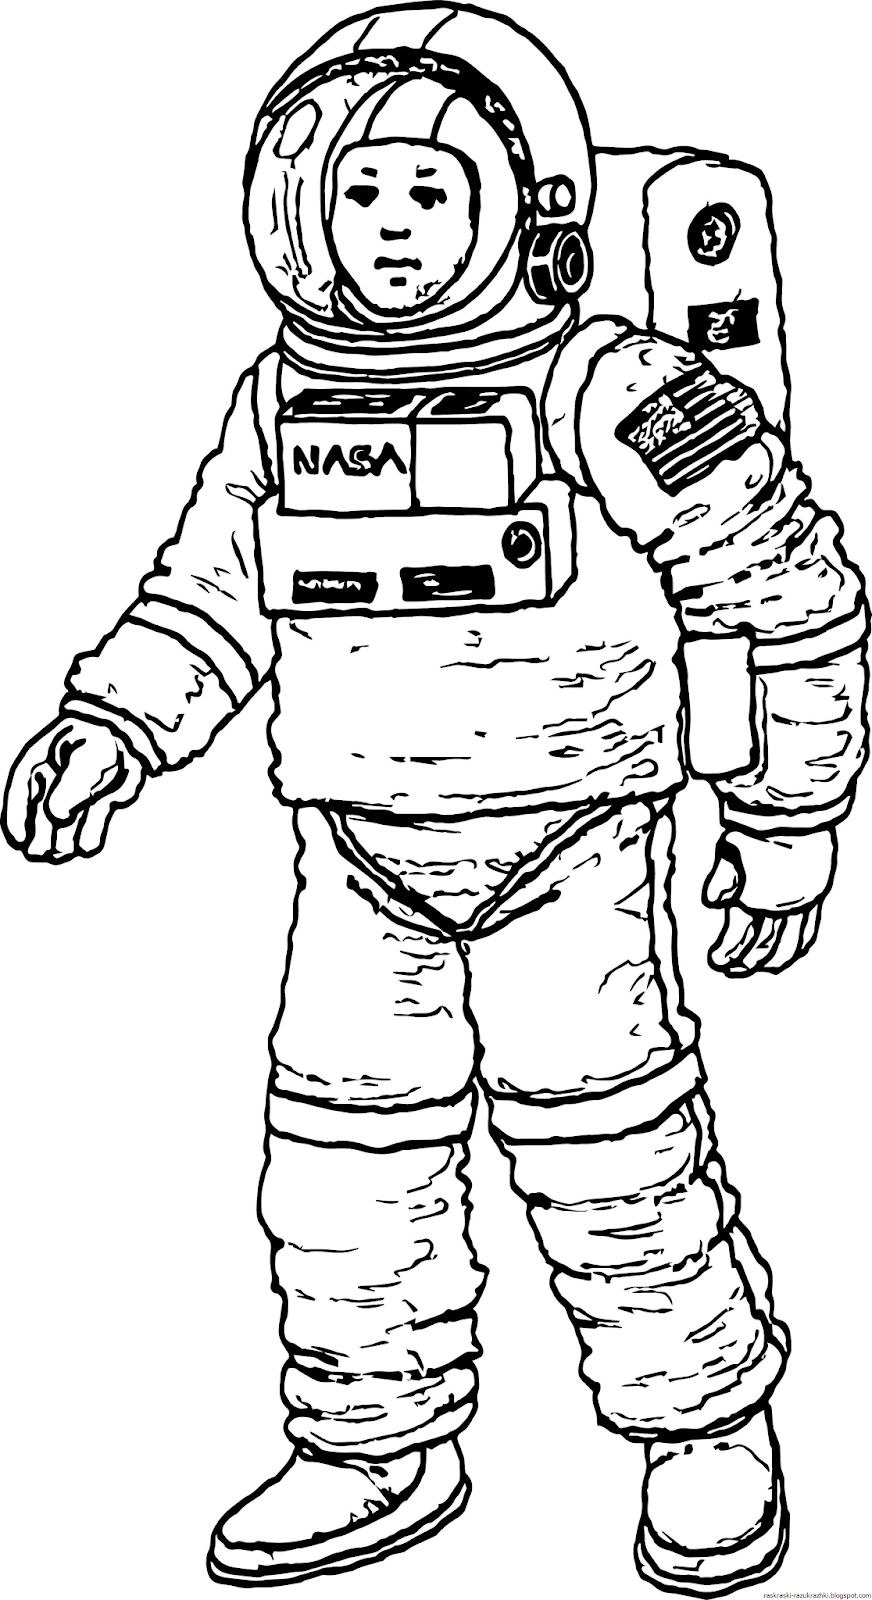 Как нарисовать космонавта в космосе. Космонавт раскраска для детей. Раскраска про космос и Космонавтов для детей. Космонавт рисунок. Рисунок Космонавта в скафандре для детей.